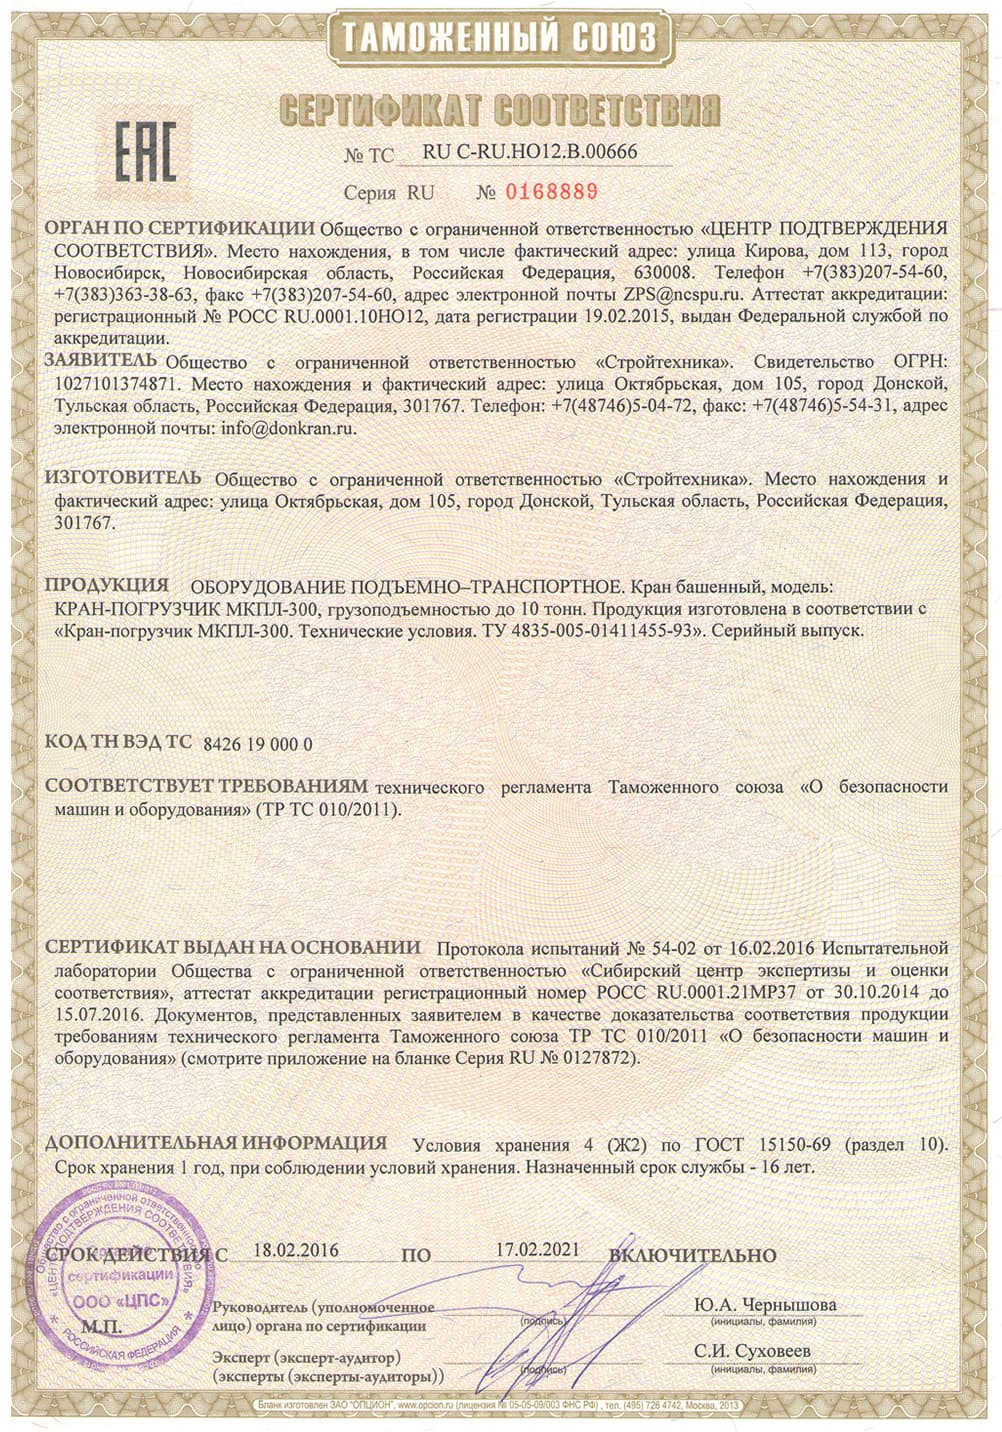 Сертификат соответствия № 0168889